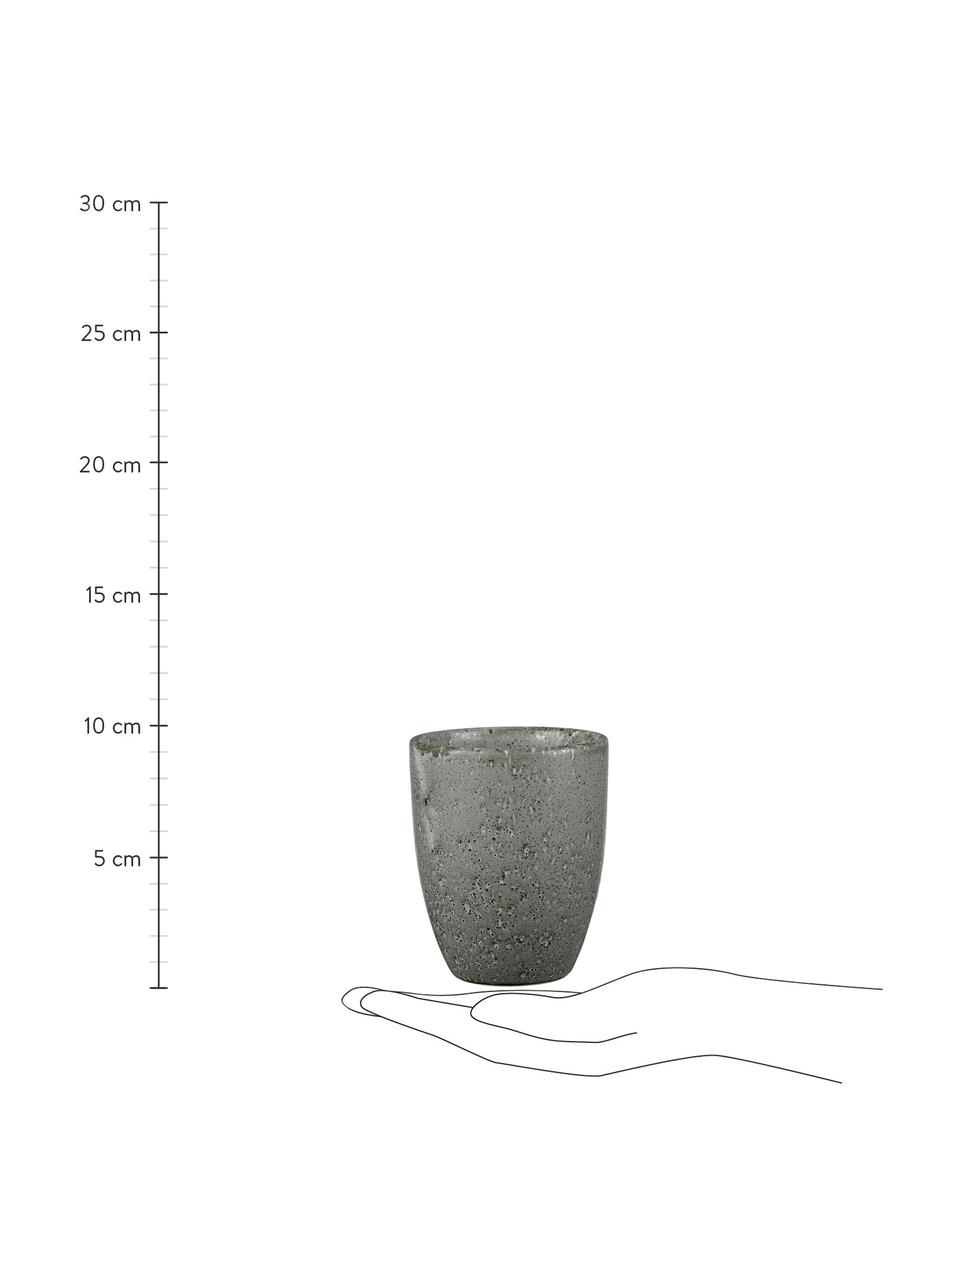 Steingut-Becher Stone mit Sprenkel-Glasur, 2 Stück, Steingut, glasiert, Grau, Ø 8 x H 10 cm